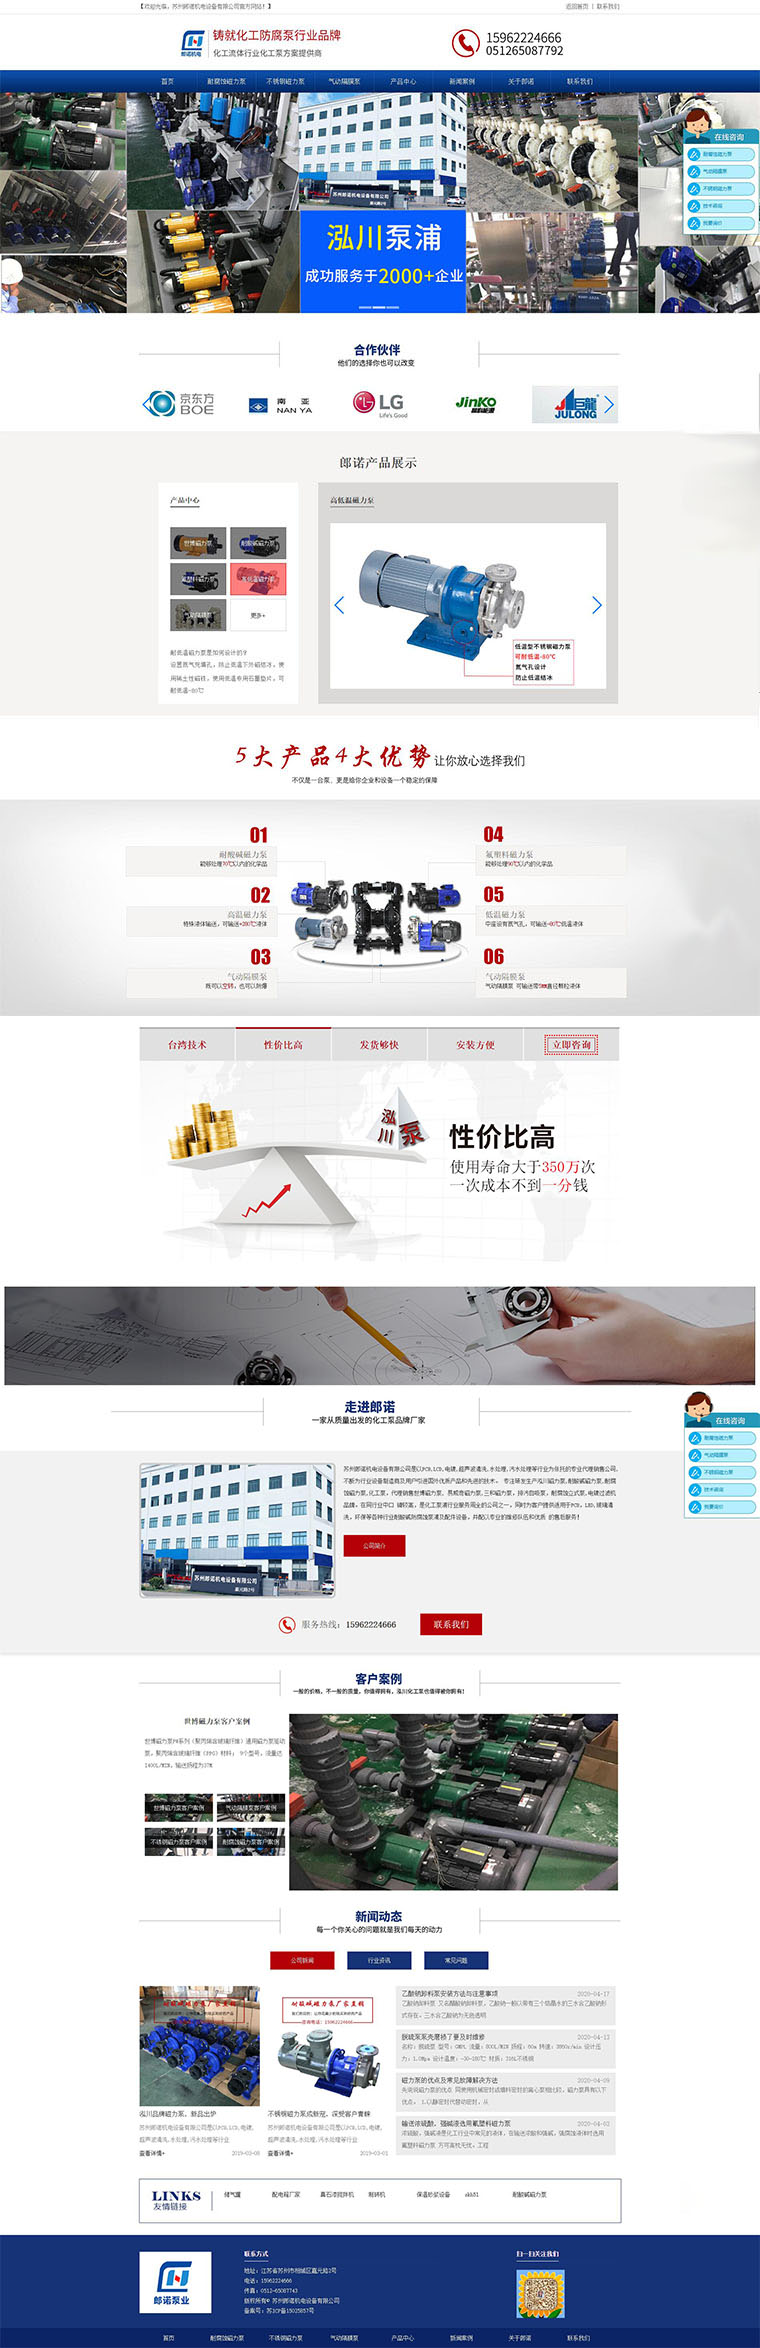 上海网站建设案例之大学开学典礼